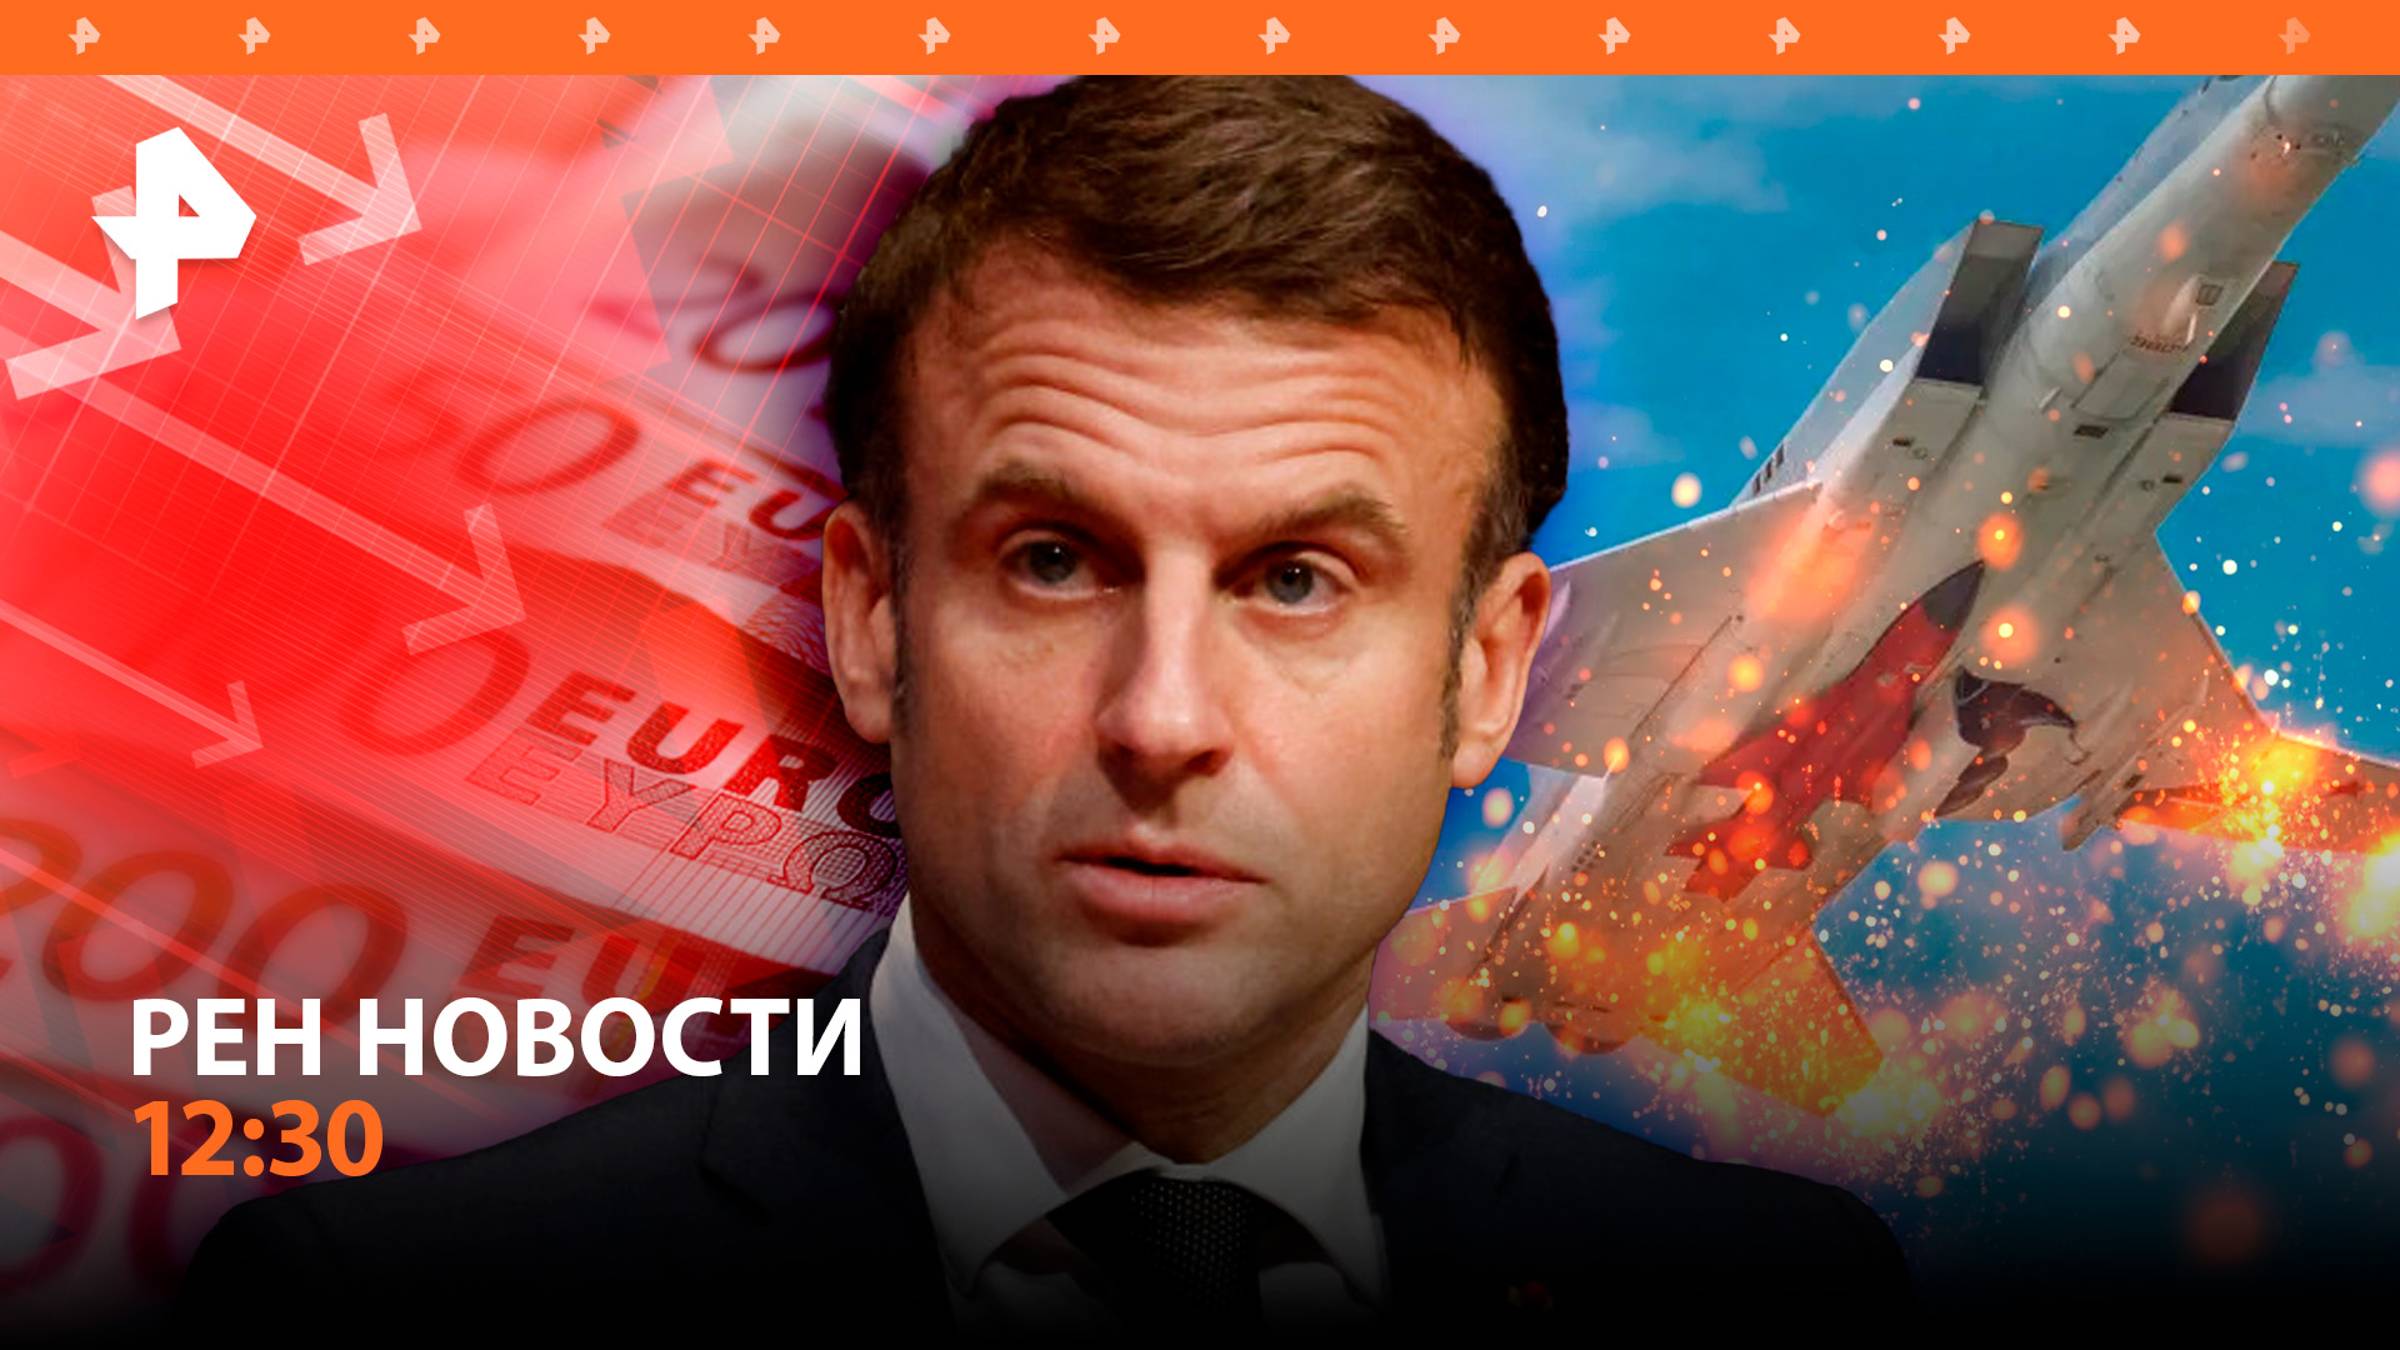 Попытка угона Ту-22М3 / Евро по наклонной: итоги выборов во Франции / РЕН Новости 8:30 08.07